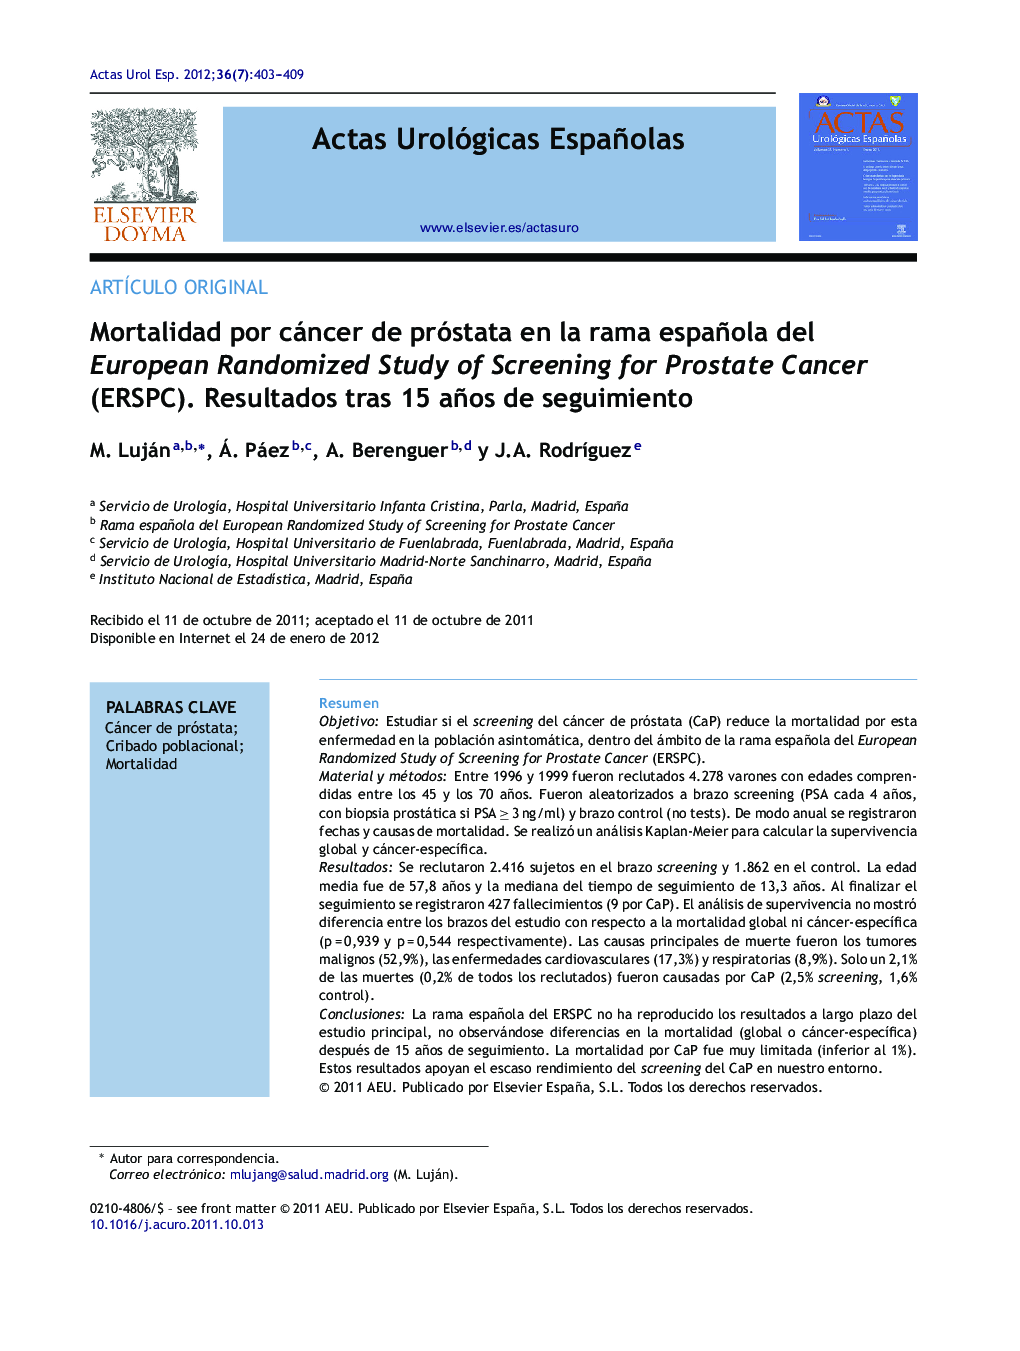 Mortalidad por cáncer de próstata en la rama española del European Randomized Study of Screening for Prostate Cancer (ERSPC). Resultados tras 15 años de seguimiento